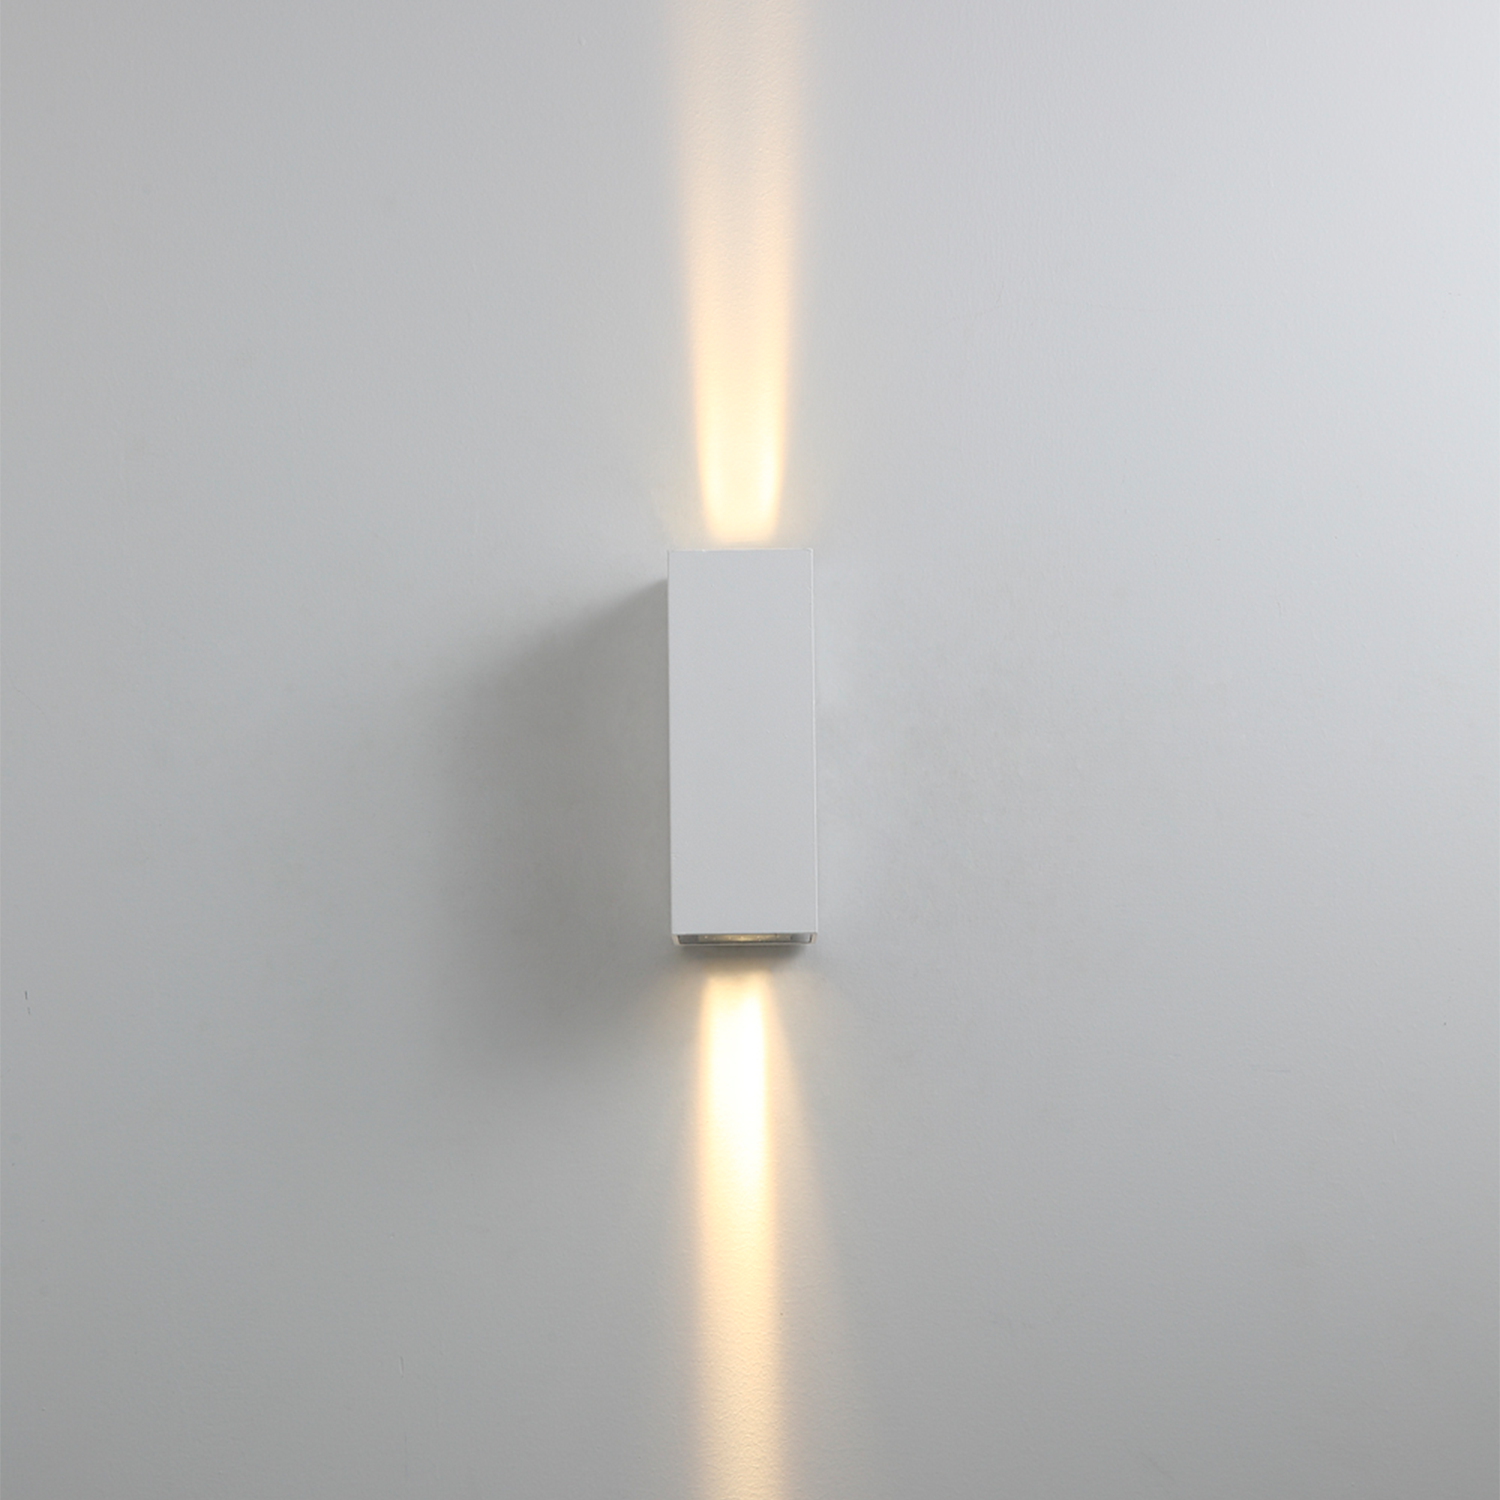 Luminaria LED arbotante para sobreponer en muro, Modelo ML-7305 The Collection